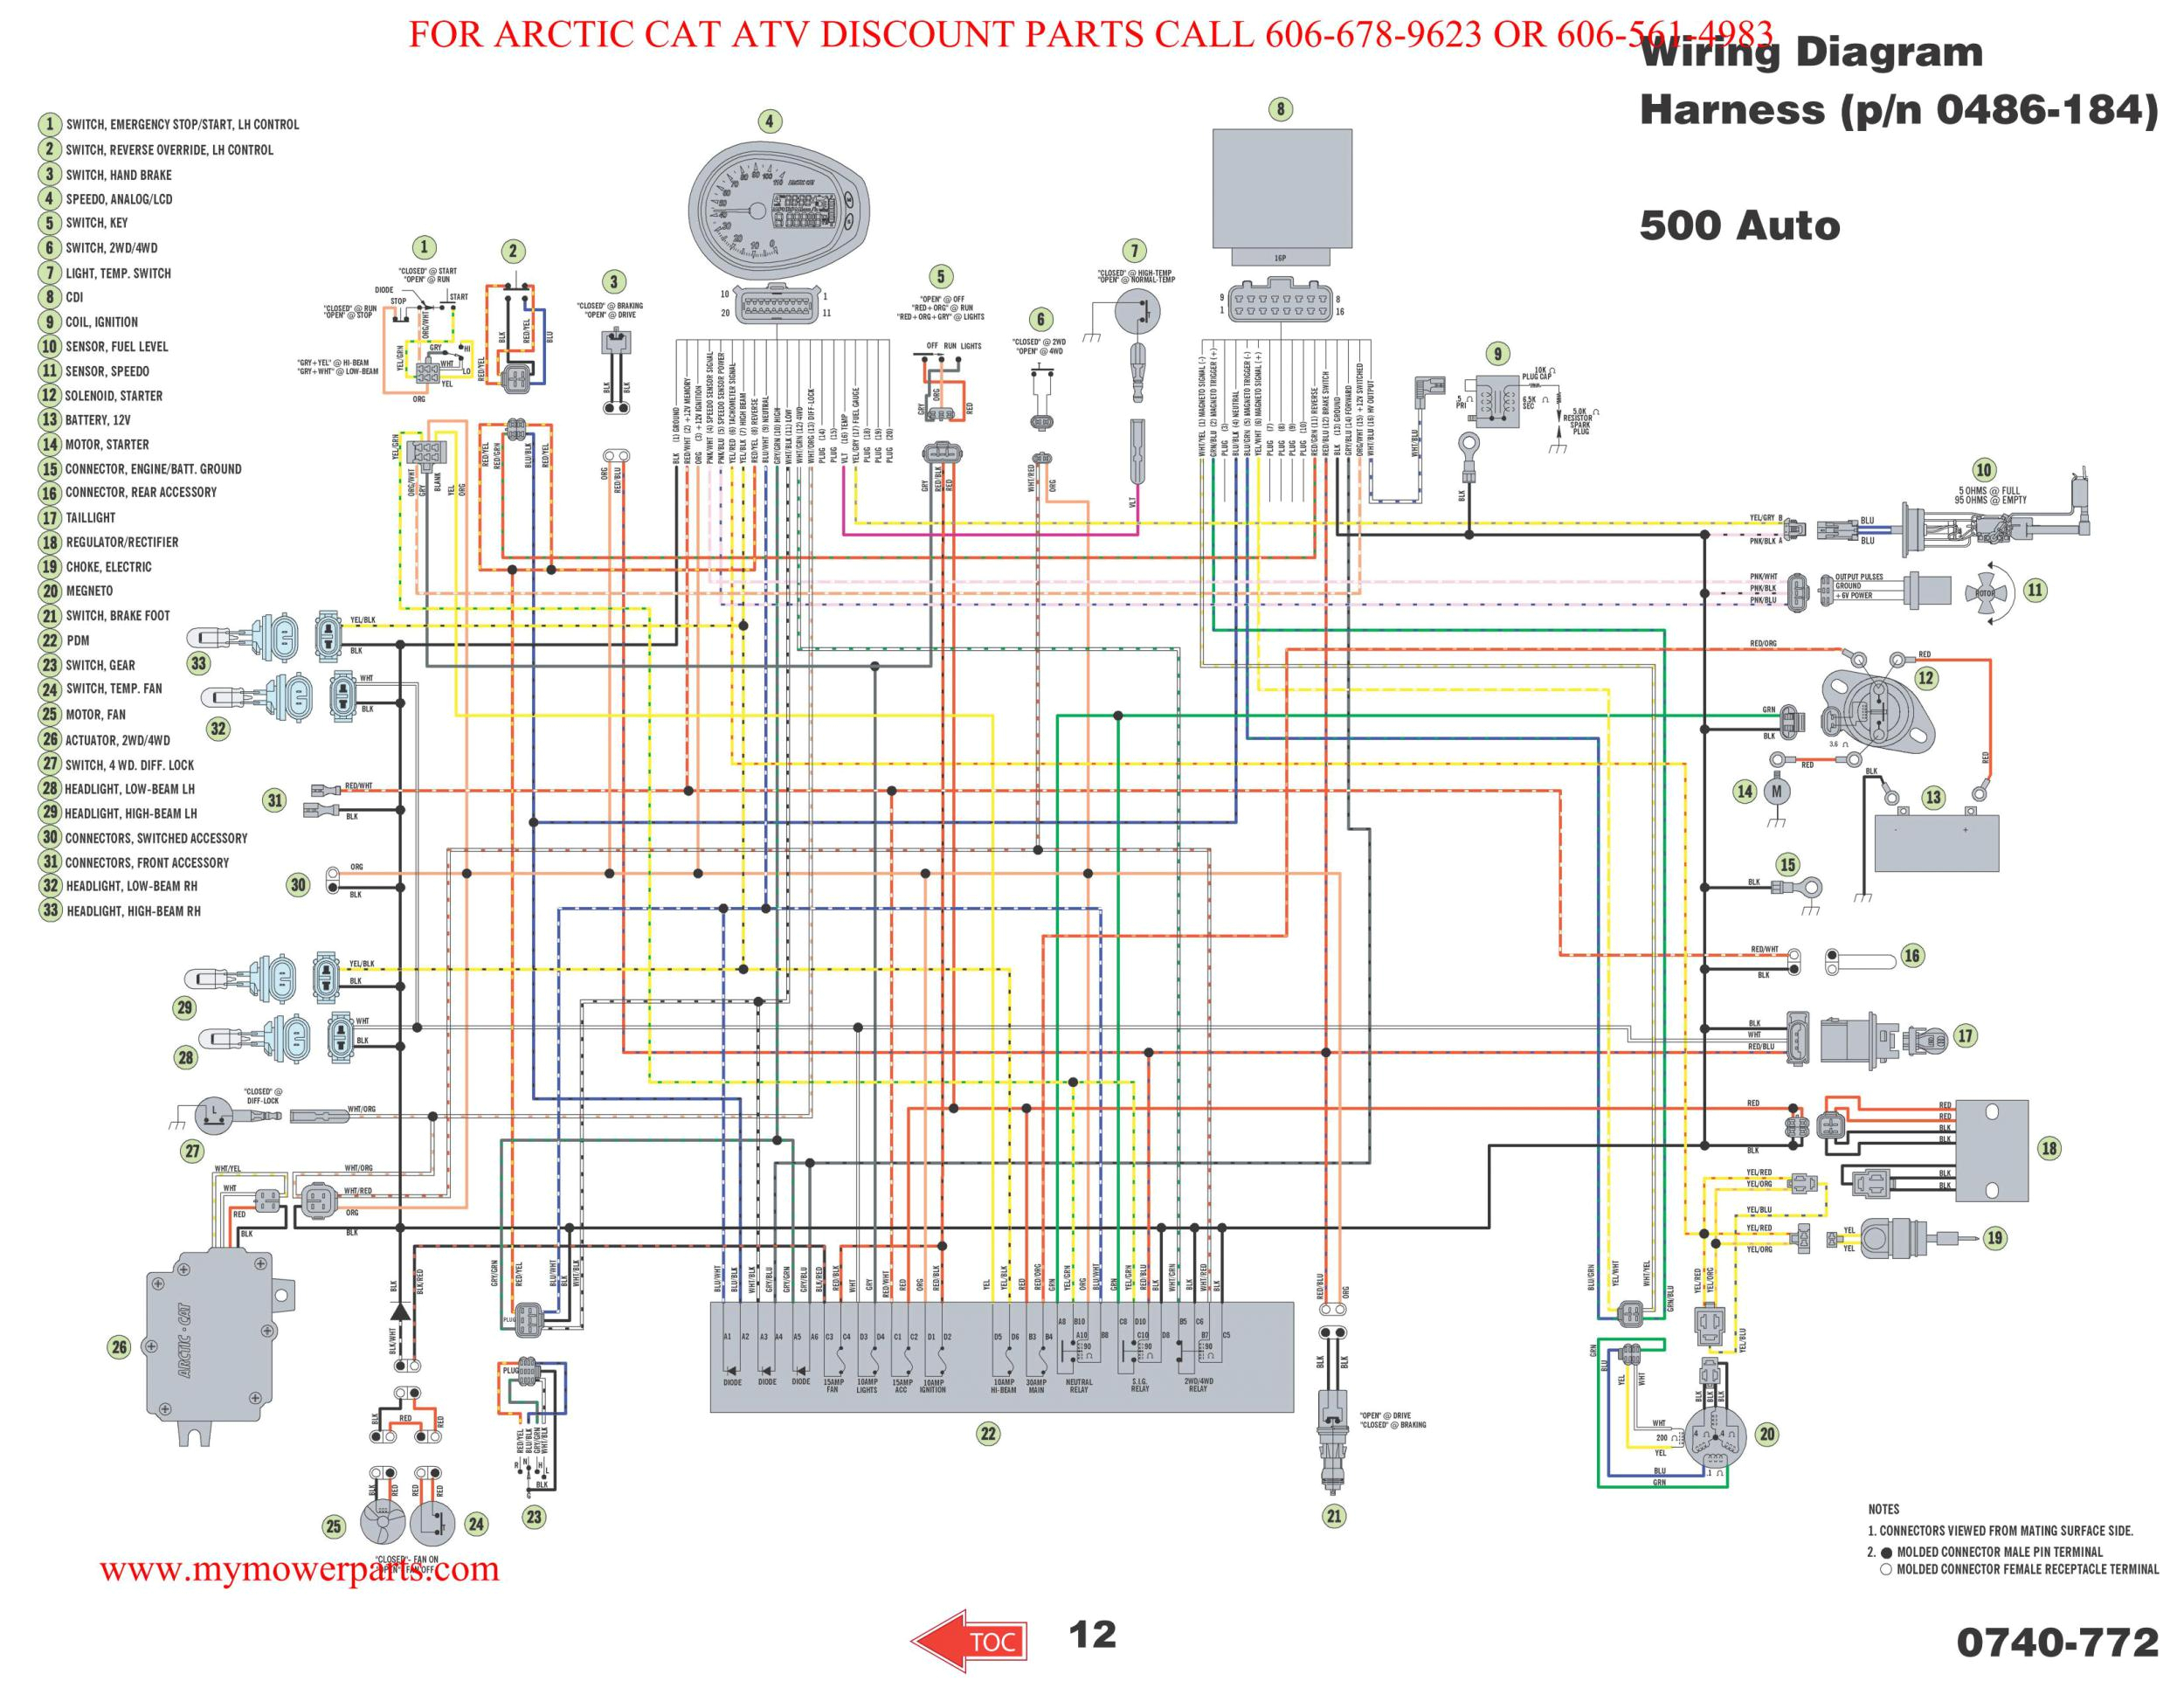 polaris 400 wiring diagram wiring diagram sheet 1995 polaris xplorer 400 wiring diagram polaris xplorer 400 wiring diagram